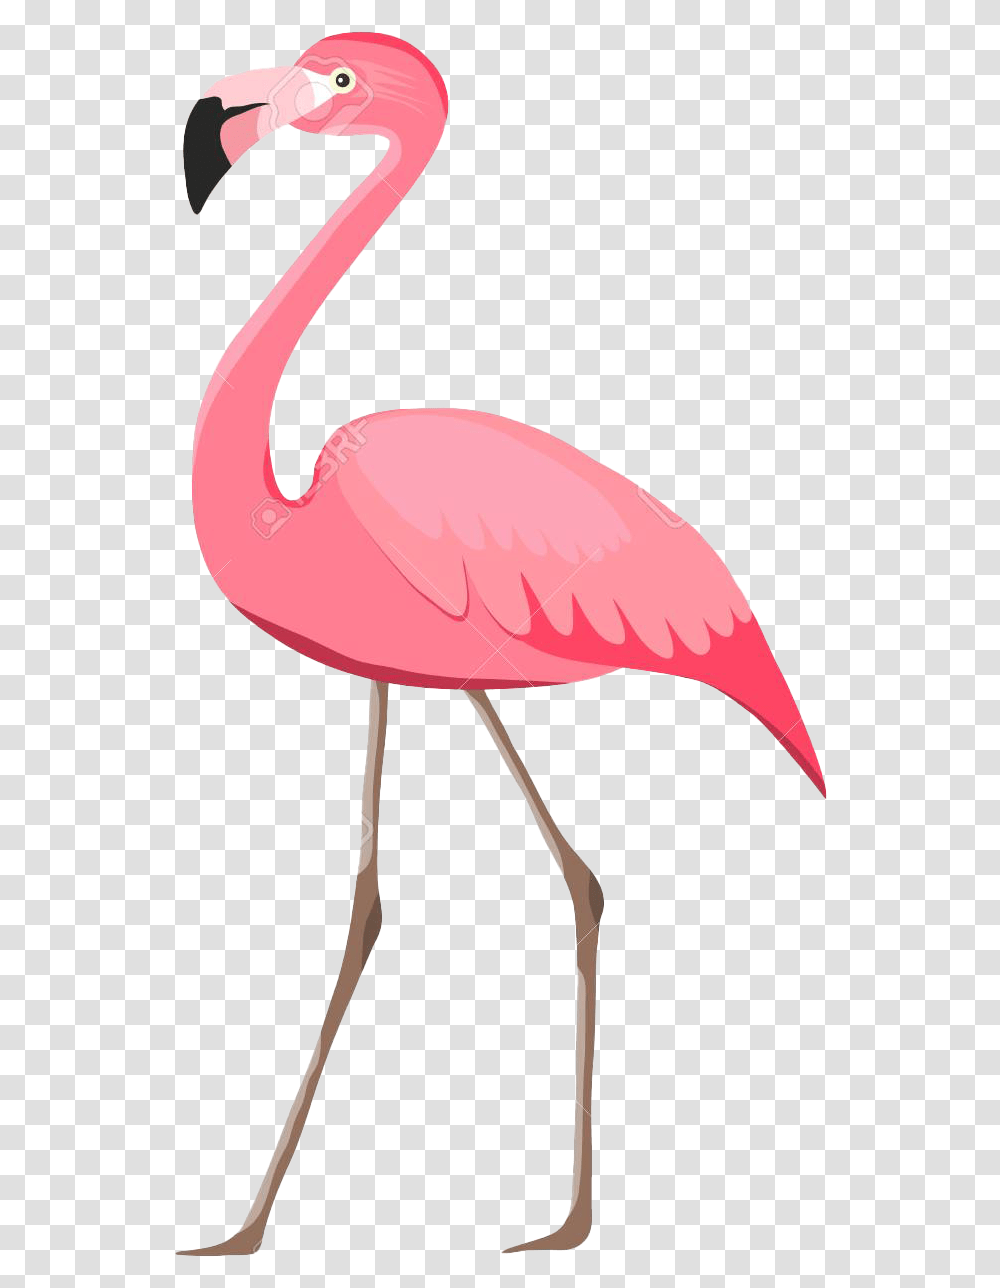 Flamingo Images Flamingo, Bird, Animal, Lamp, Beak Transparent Png